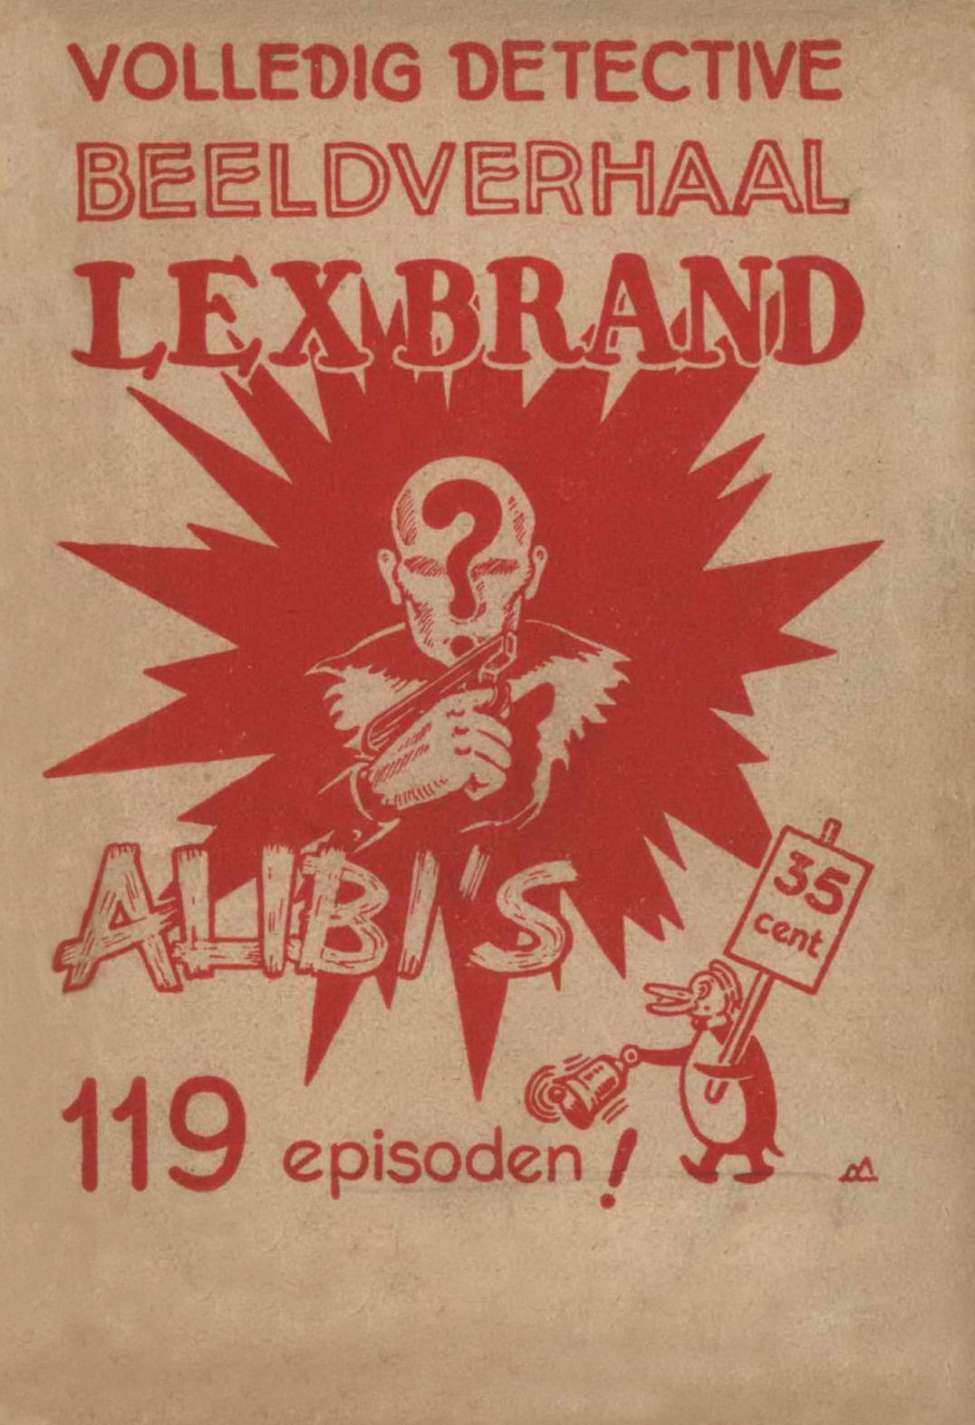 Comic Book Cover For Lex Brand 2 - Alibi's